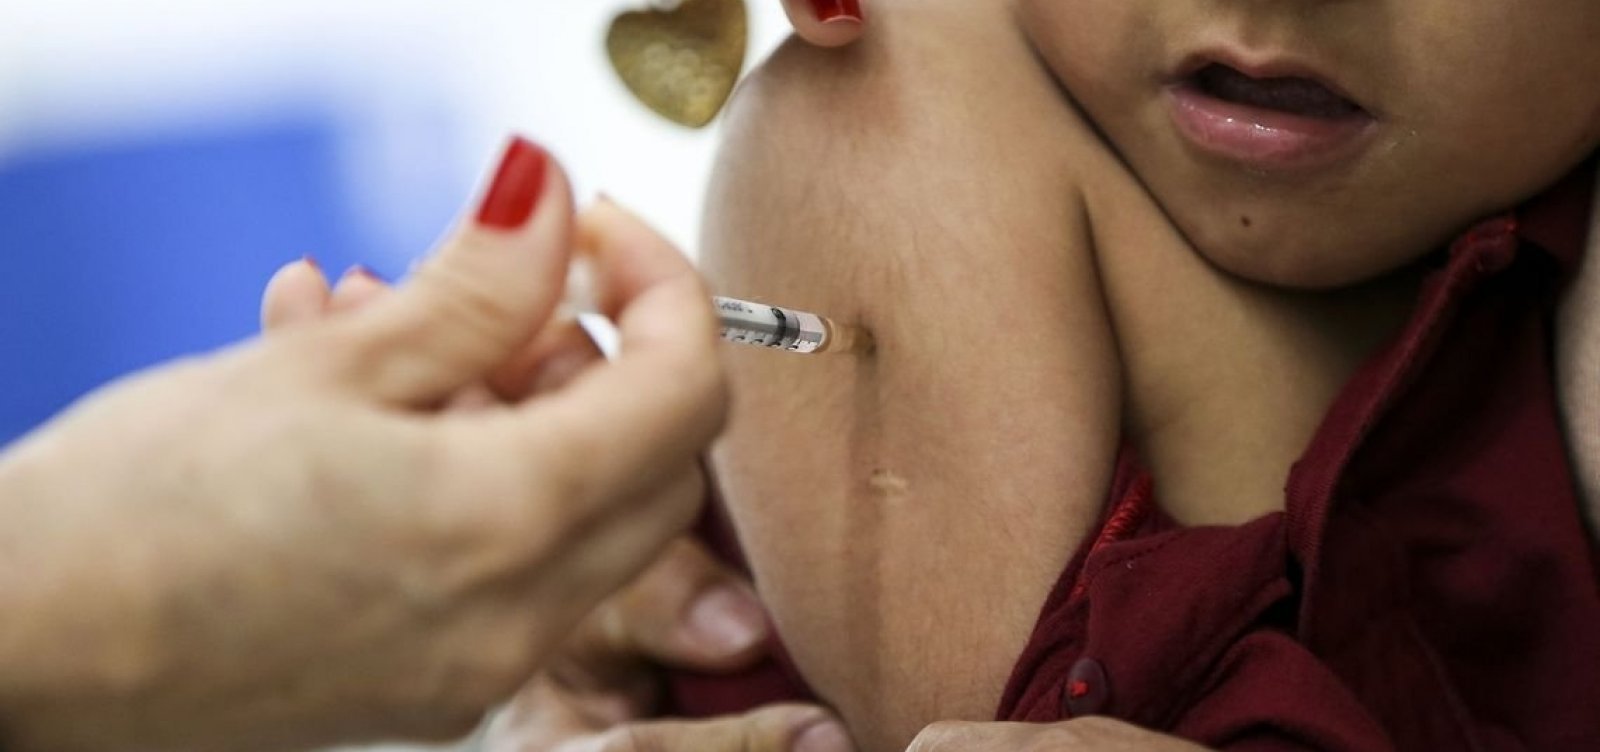 Dezesseis estados brasileiros estão em surto ativo de sarampo